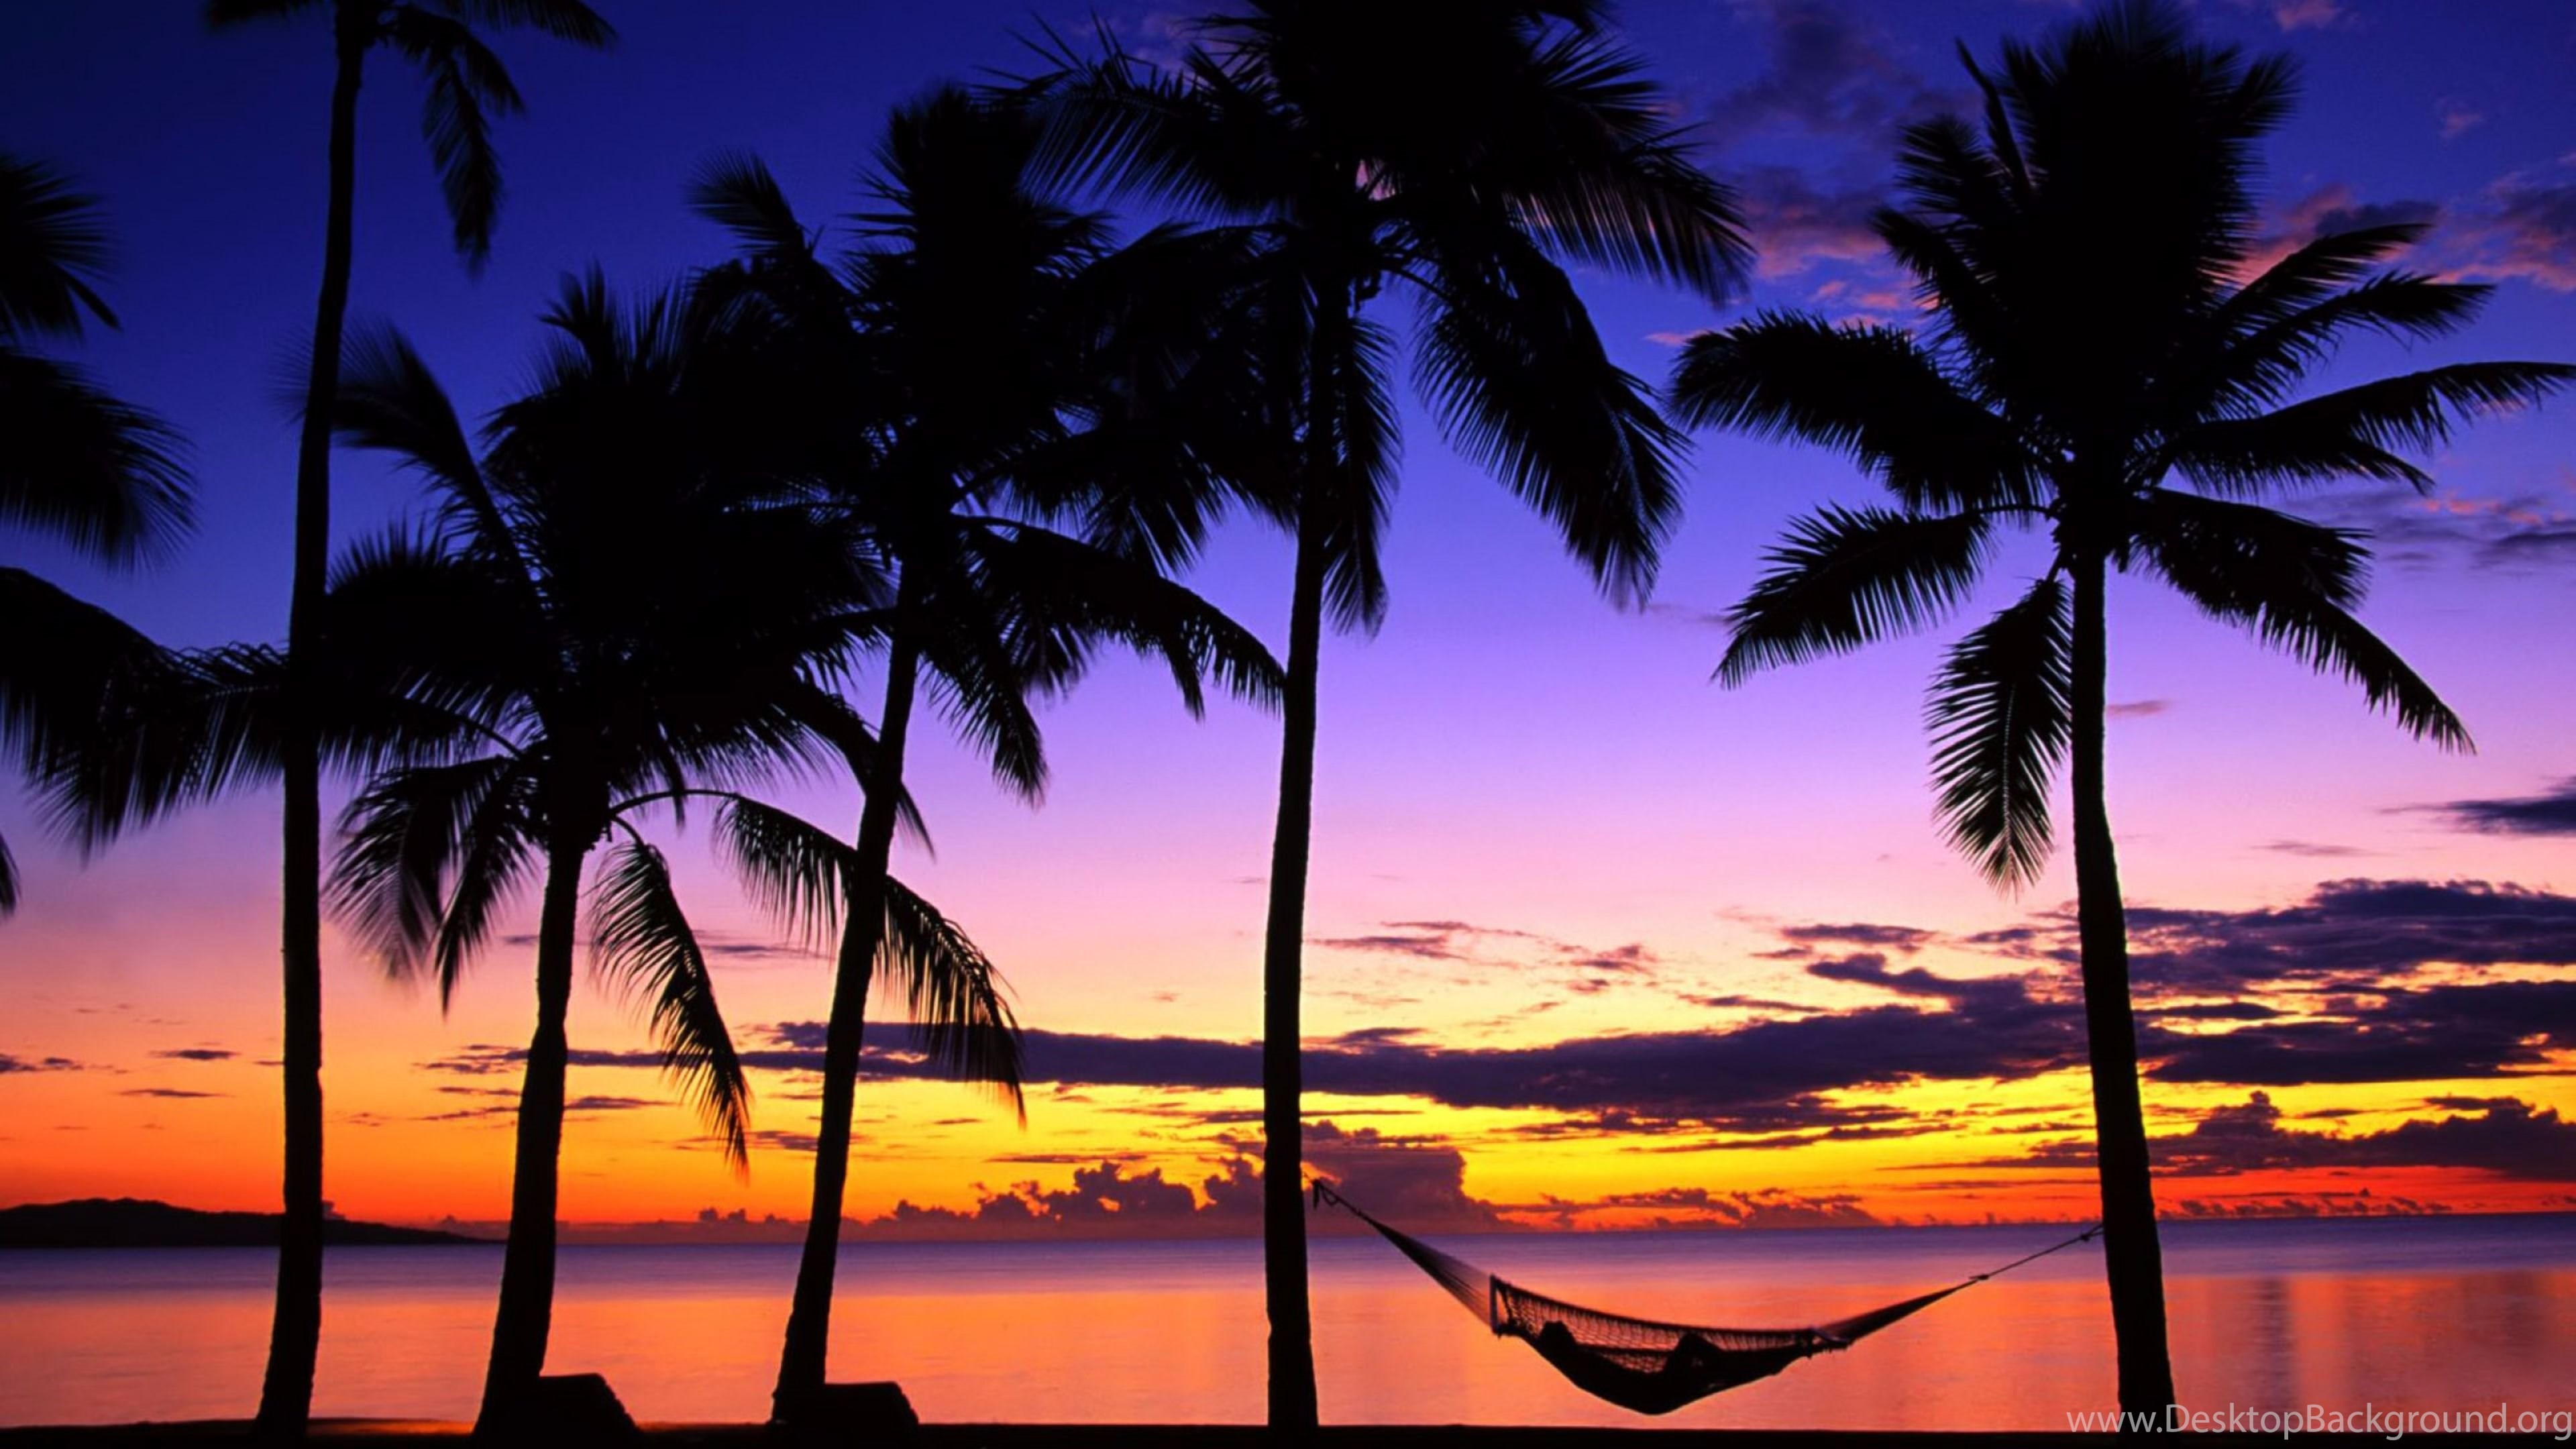 3840x2160 ... Relaxing Beach 4K Sunset Wallpapers Desktop Background